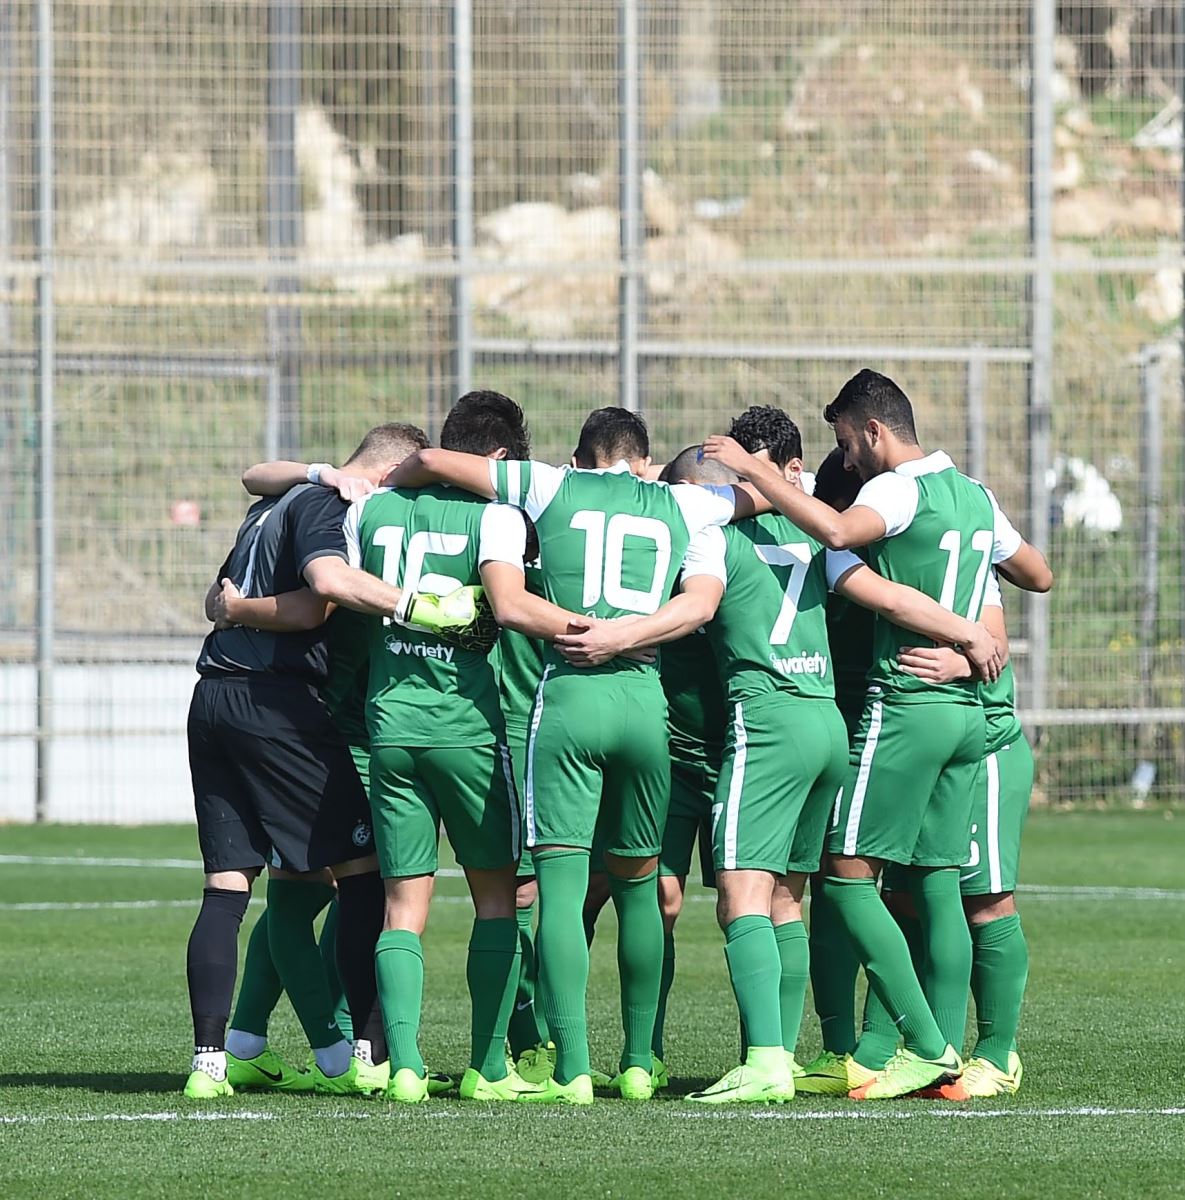 קבוצת הנוער סיימה בתיקו 1:1 מול הפועל רמה"ש